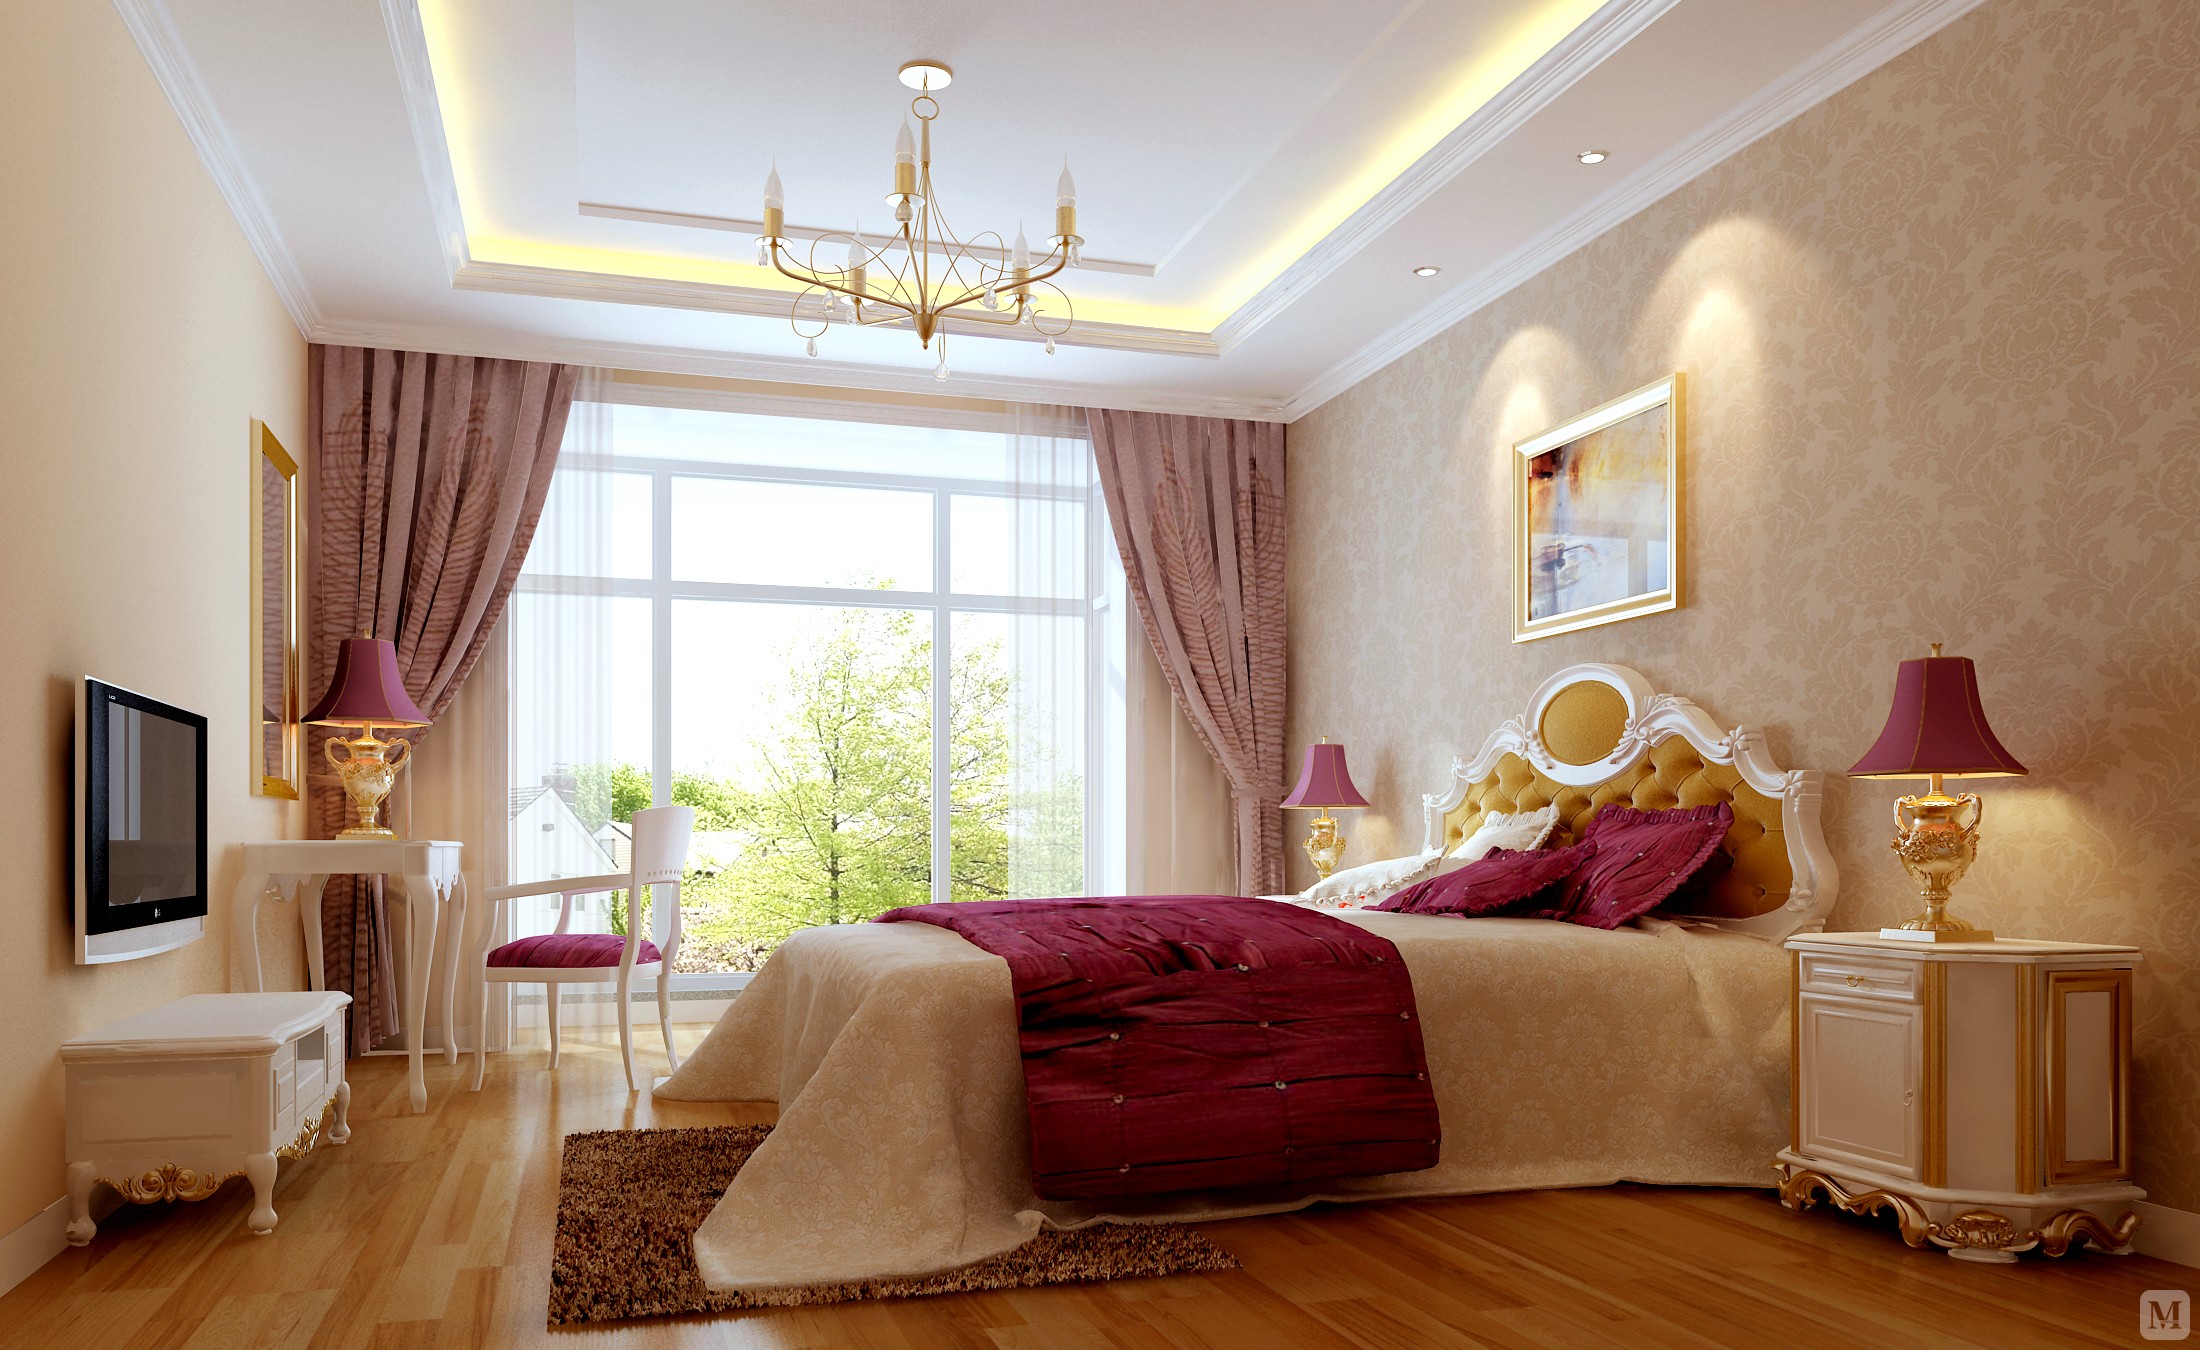 欧式古典风格欧式古典风格在空间上追求连续性，追求形体的变化和层次感。室内外色彩鲜艳，光影变化丰富。 室内多用带有图案的壁纸、地毯、窗帘、床罩、及帐幔以及古典式装饰画或物件；为体现华丽的风格，家具、门、窗多漆成白色，家具、画框的线条部位饰以金线、金边。古典风格是一种追求华丽、高雅的欧洲古典主义,典雅中透着高贵，深沉里显露豪华，具有很强的文化感受和历史内涵。